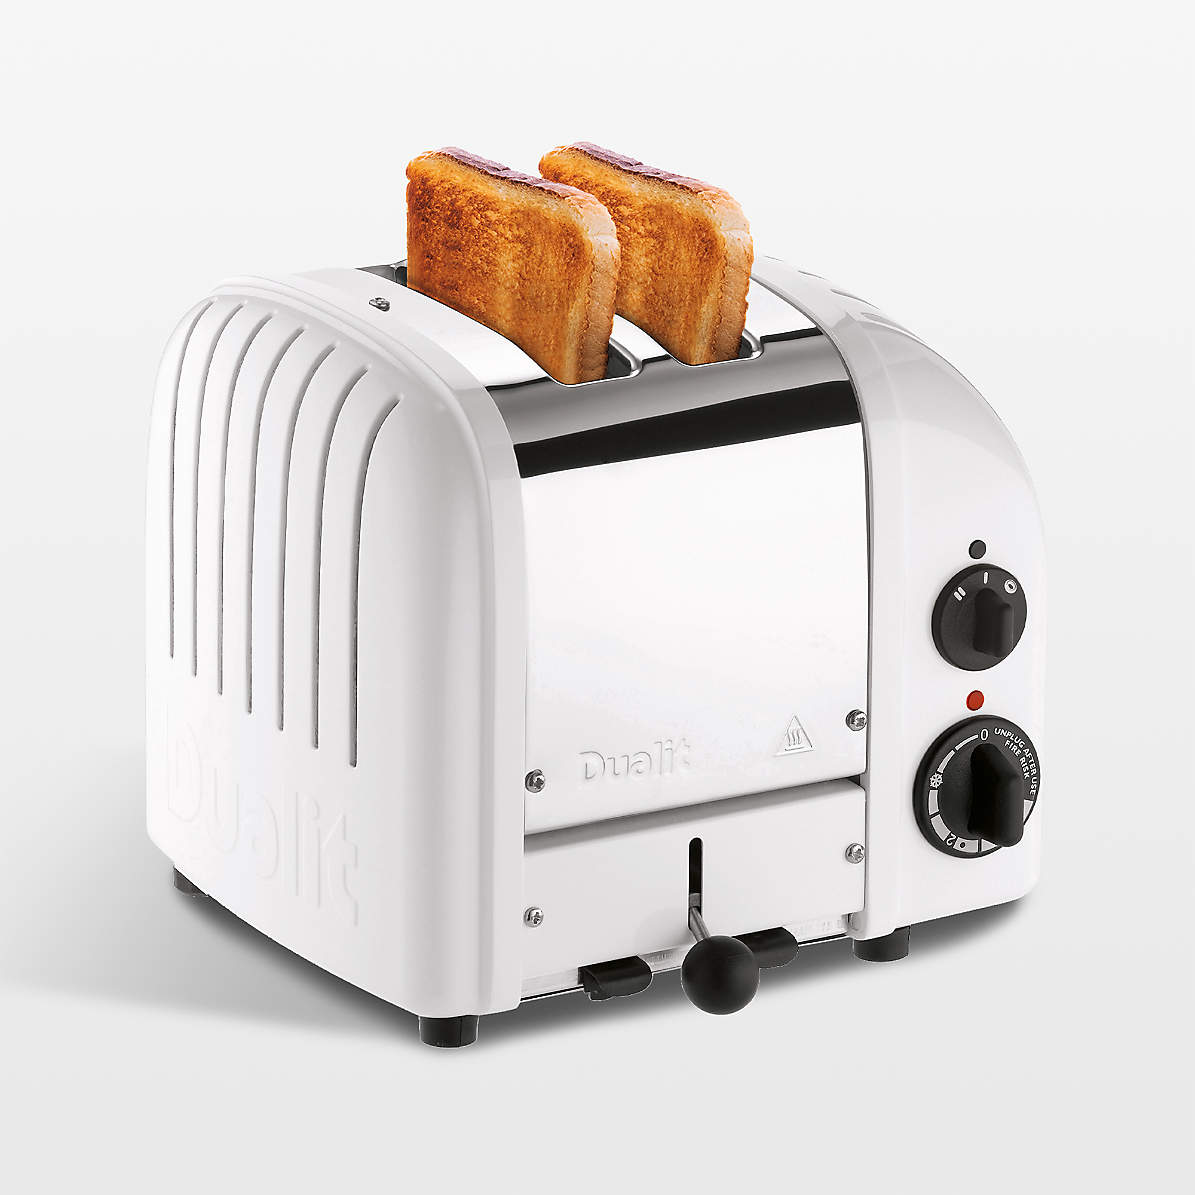 https://cb.scene7.com/is/image/Crate/Dualit2slNwGnTstrWHSSS22_VND/$web_pdp_main_carousel_zoom_med$/220809140300/dualit-2-slice-toaster-white.jpg